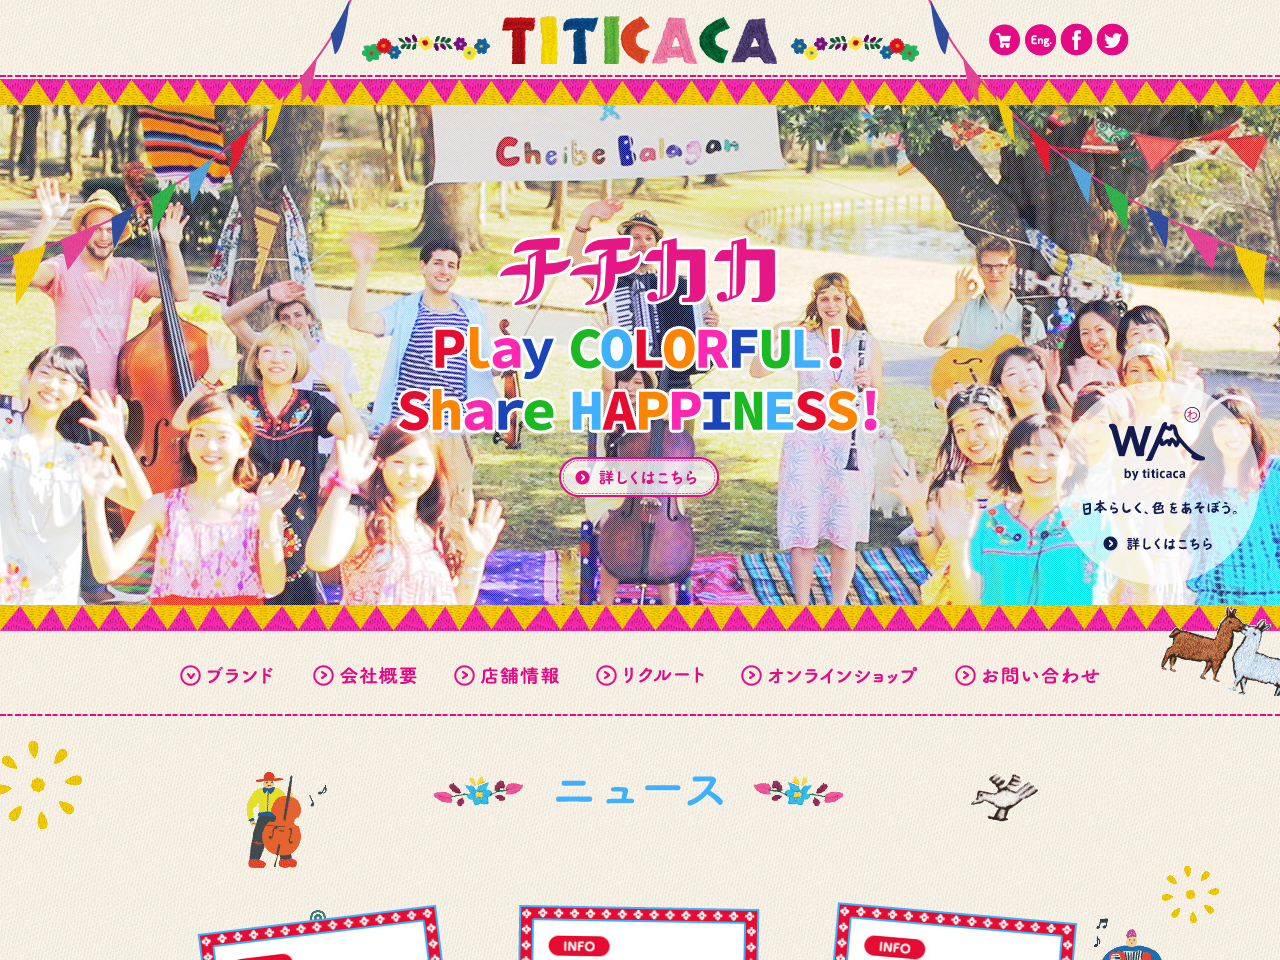 チチカカ 公式サイト TITICACA OFFICIAL WEB